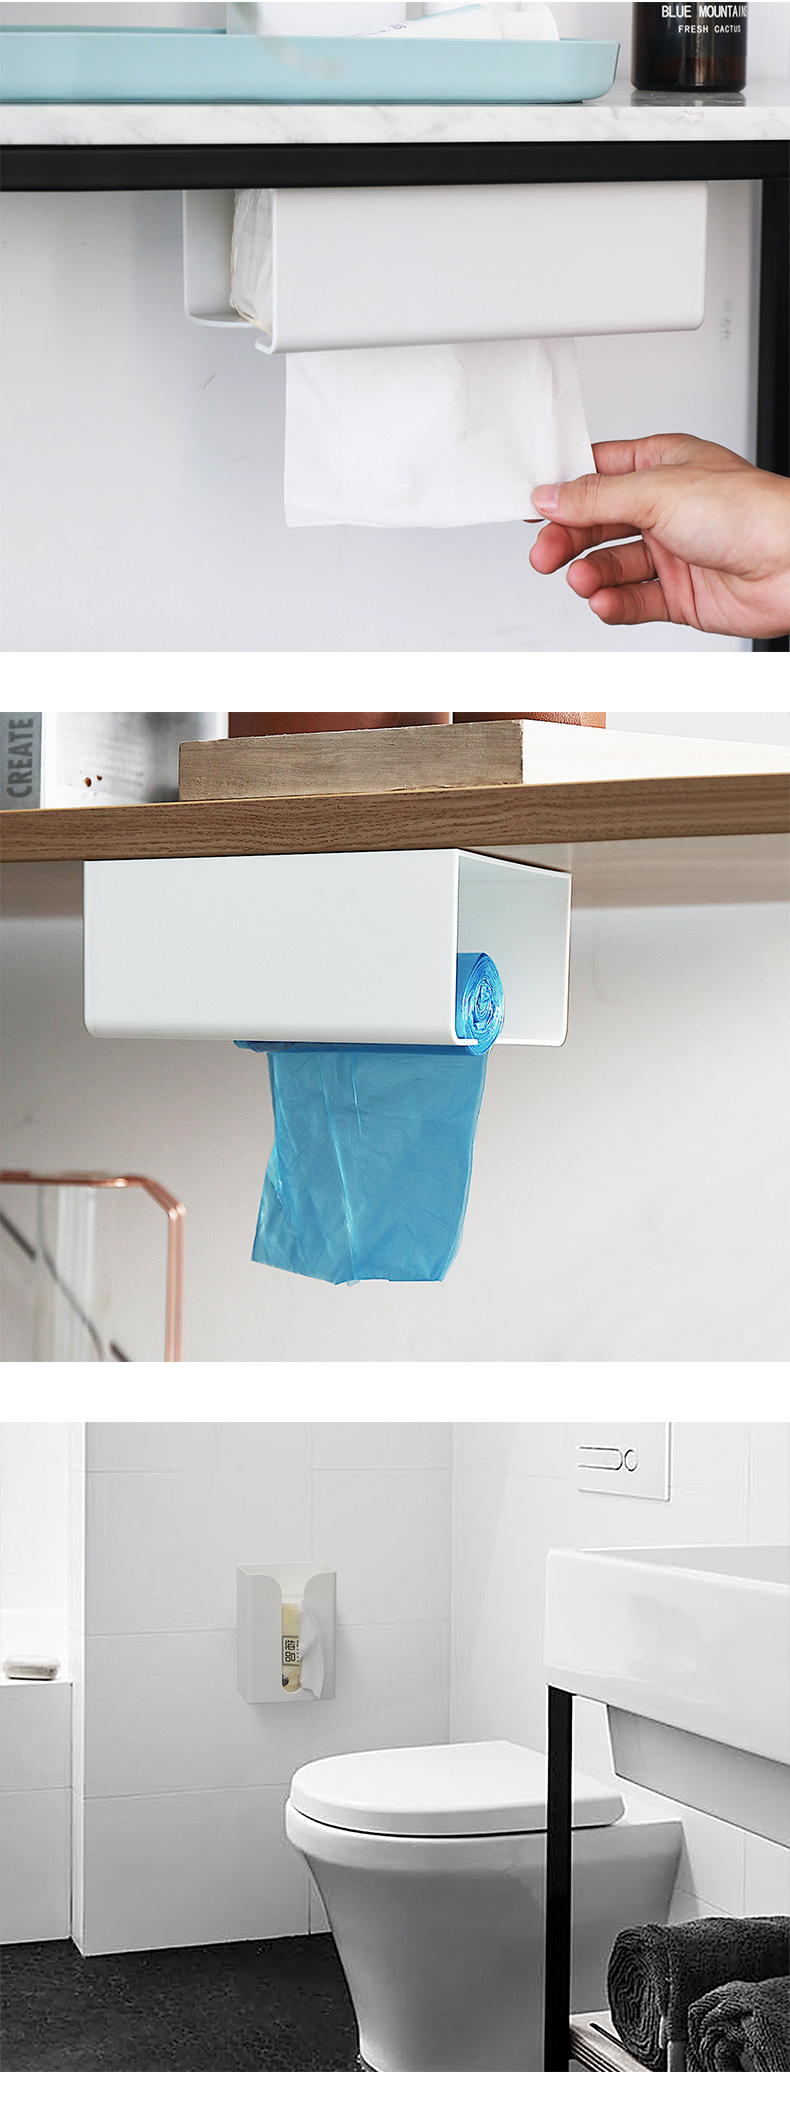 黏貼式抽取式衛生紙掛架 創意廚房必備紙巾掛架 衛生紙收納架 收納盒8